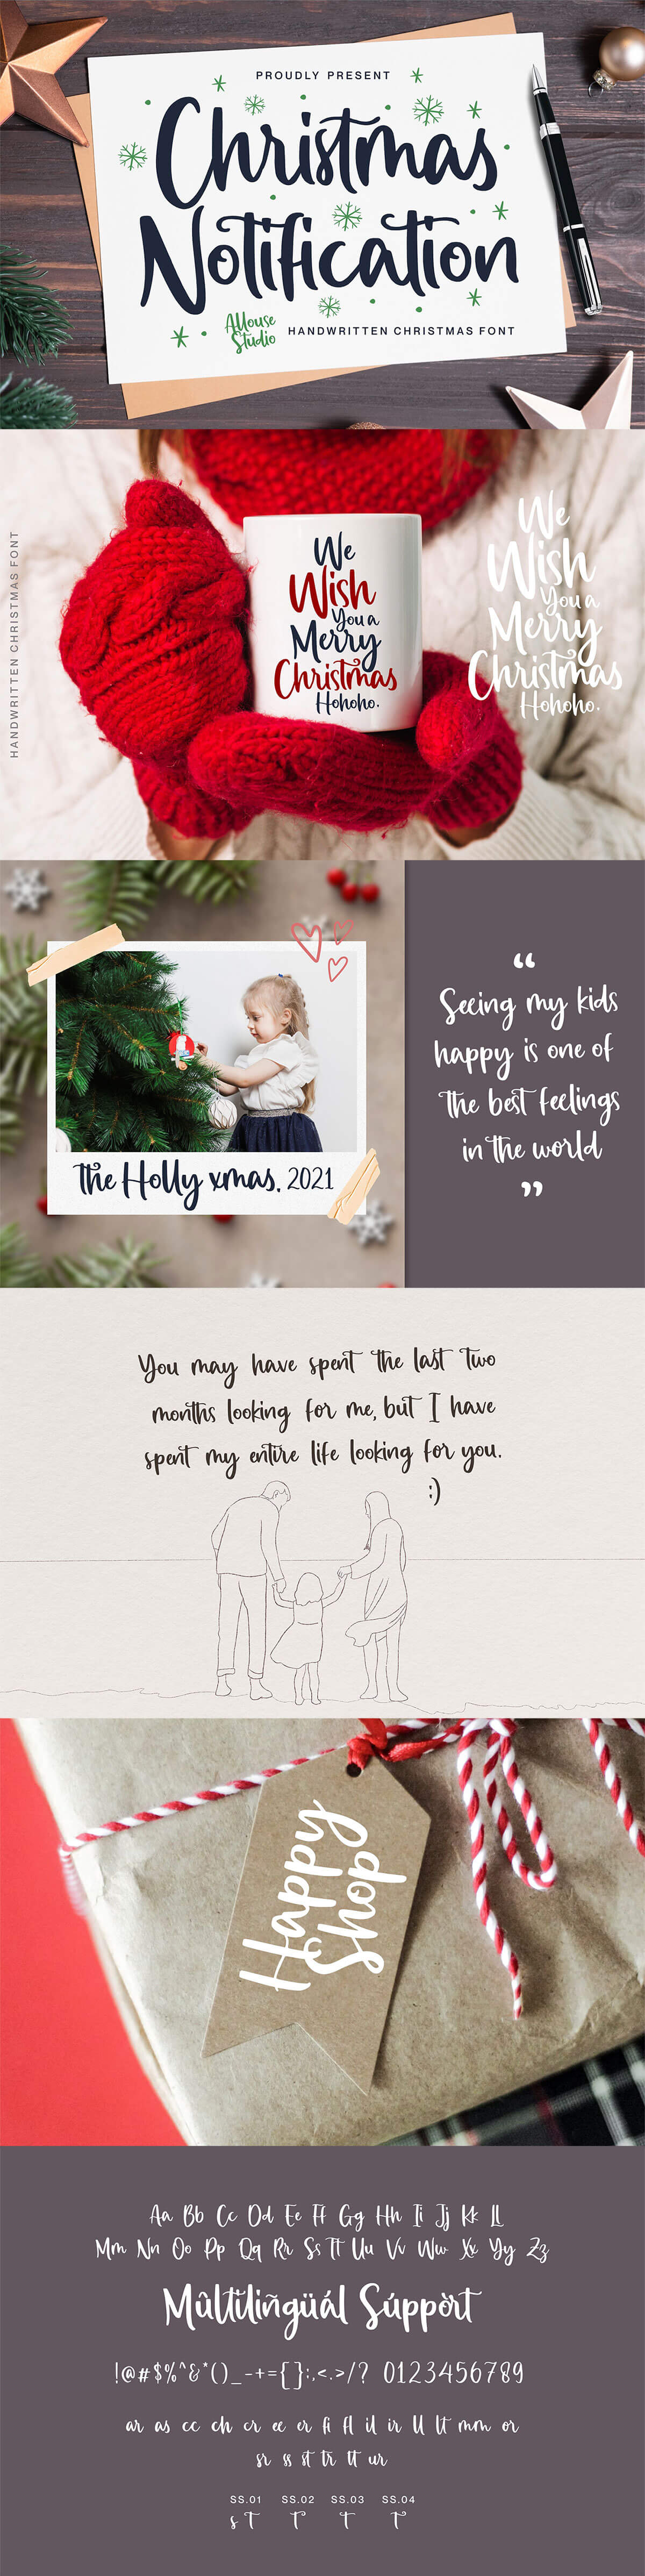 Christmas Notification Handwritten Font